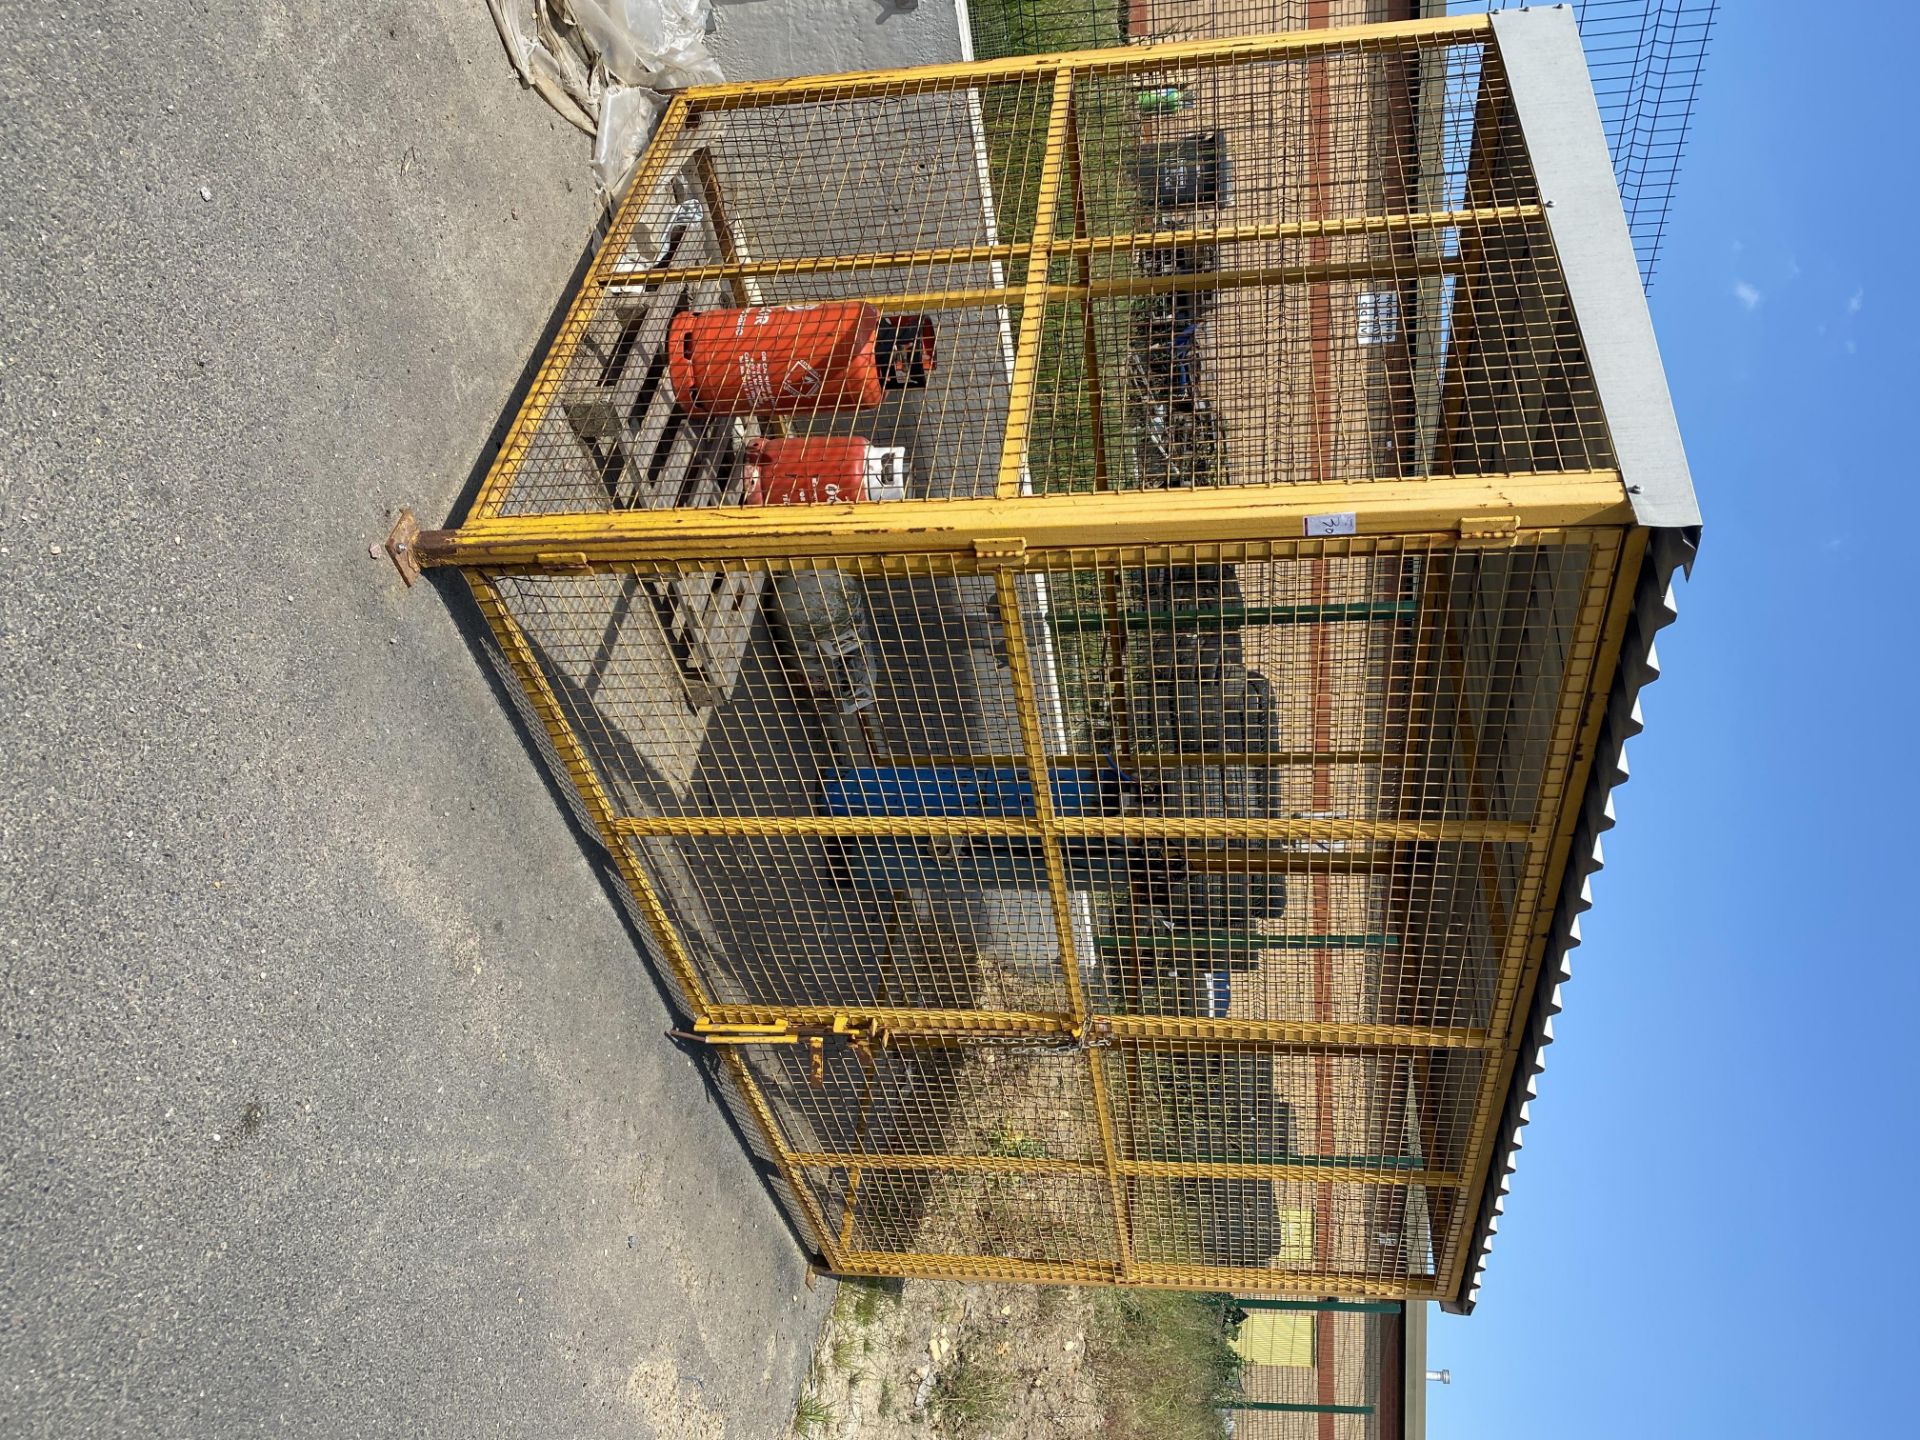 Large storage cage unit